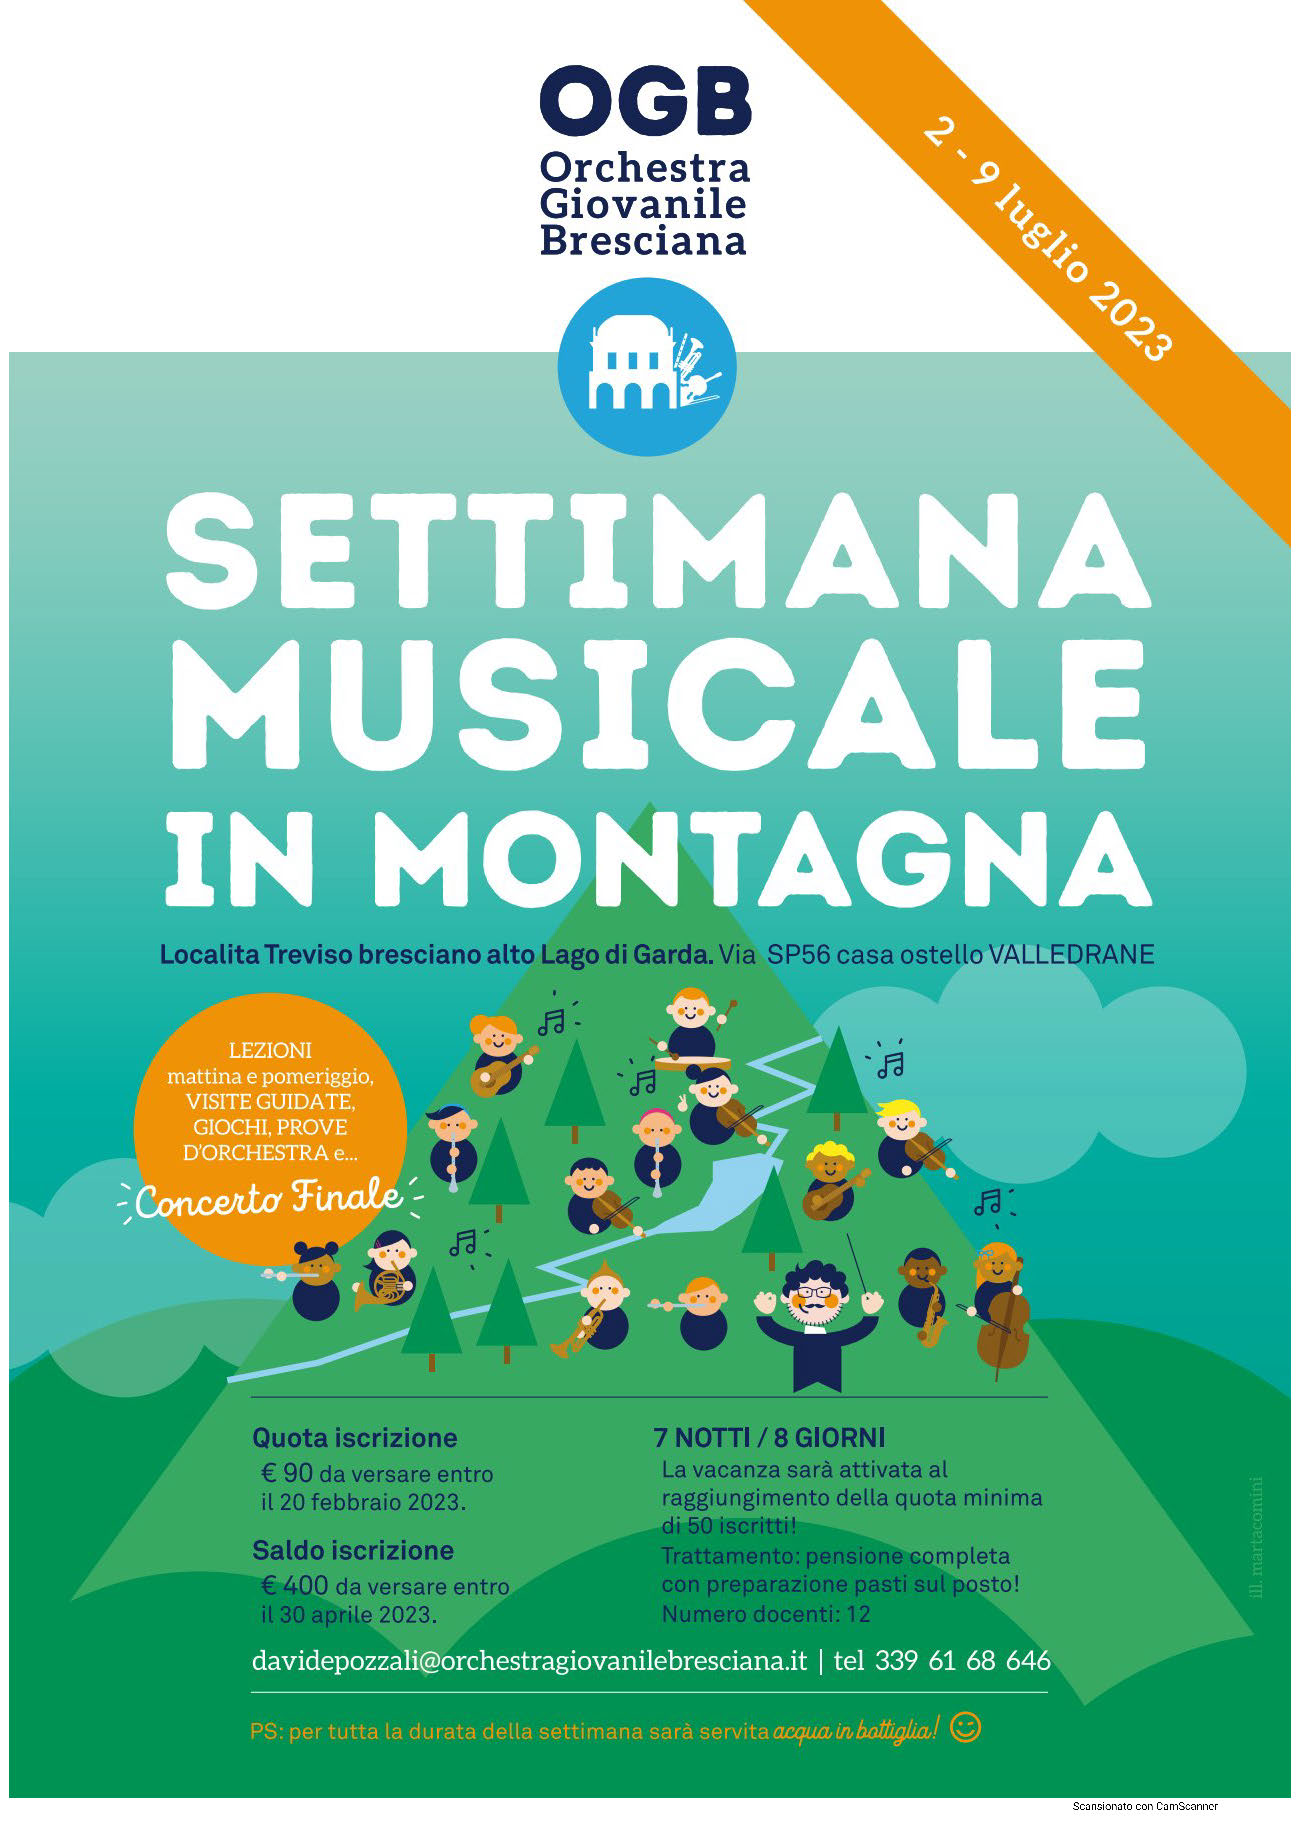 Orchestra Giovanile Bresciana - Settimana Musicale In Montagna